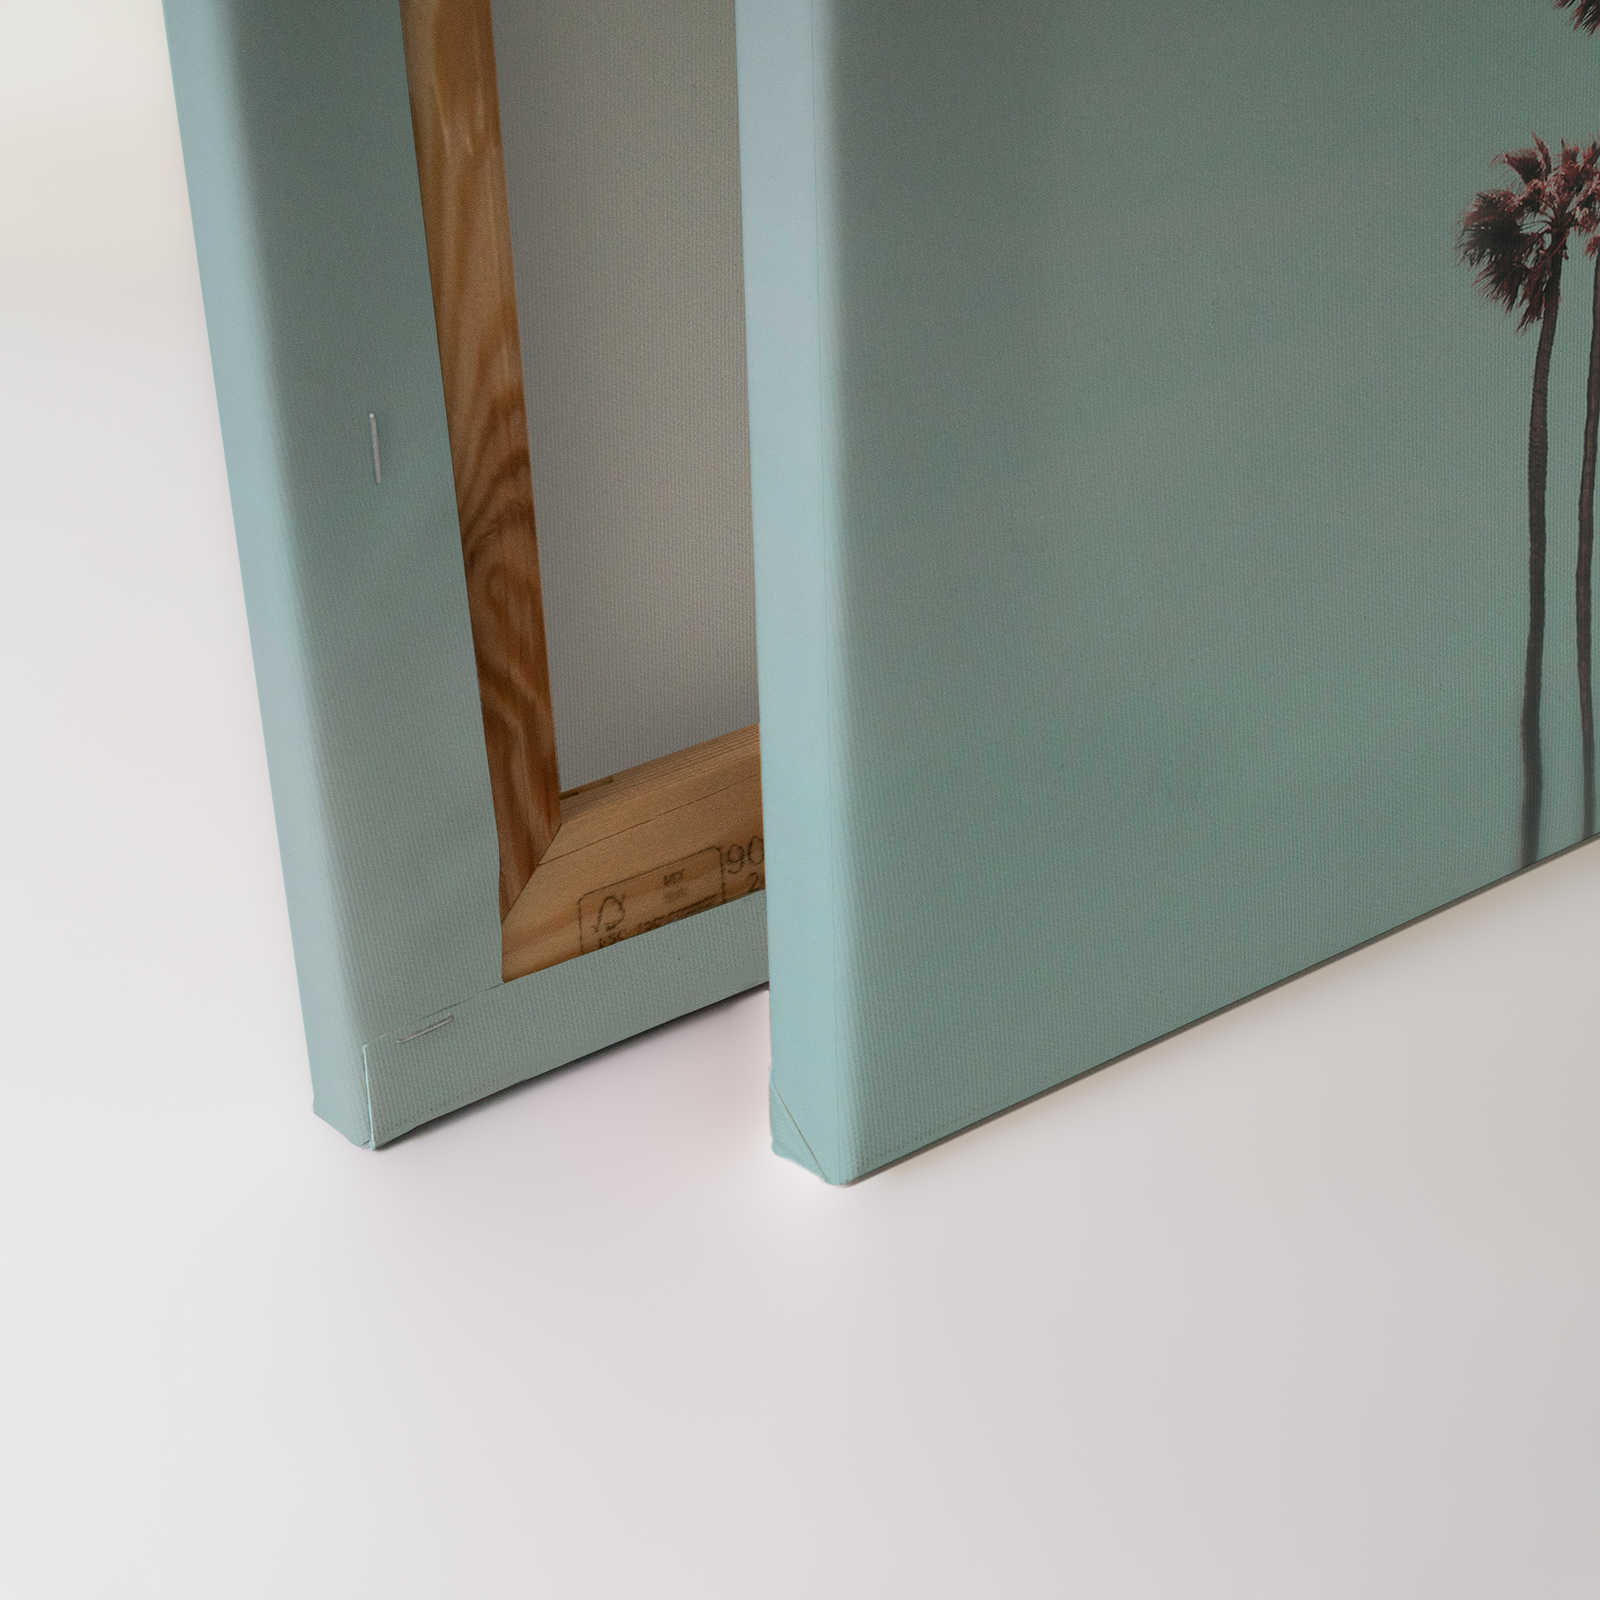             Tableau toile Palmiers & ciel pour une ambiance de plage en turquoise & rose - 1,20 m x 0,80 m
        